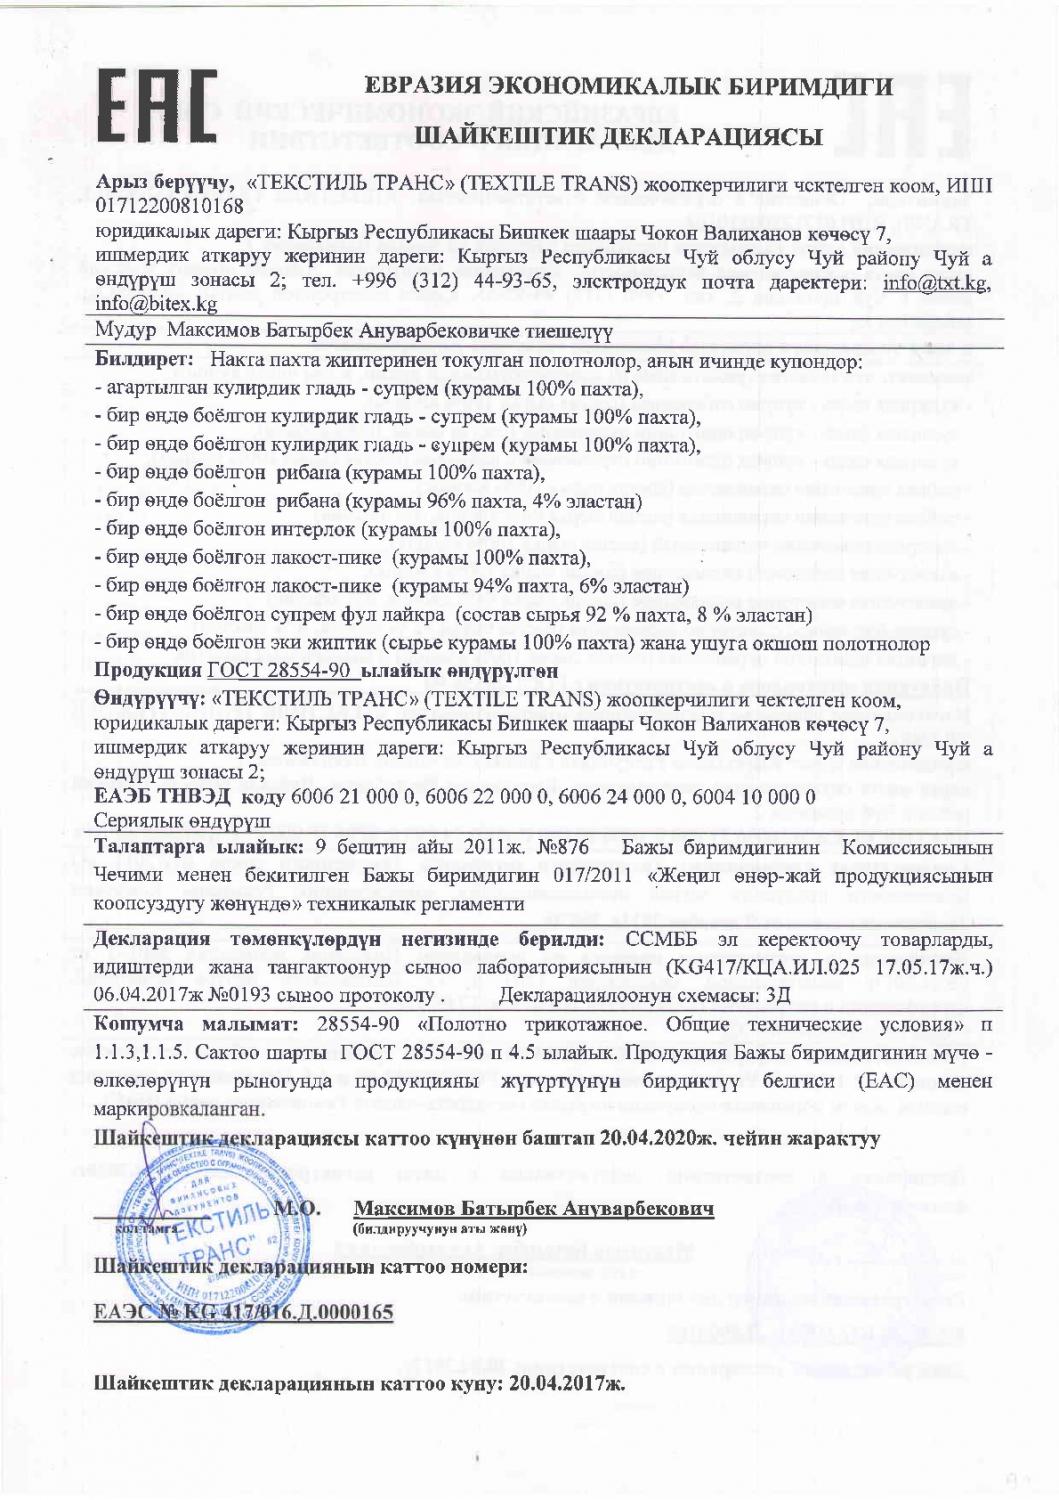 Декларация о соответствии. Евразийский экономический союз. Полотна. (кыргызский язык)